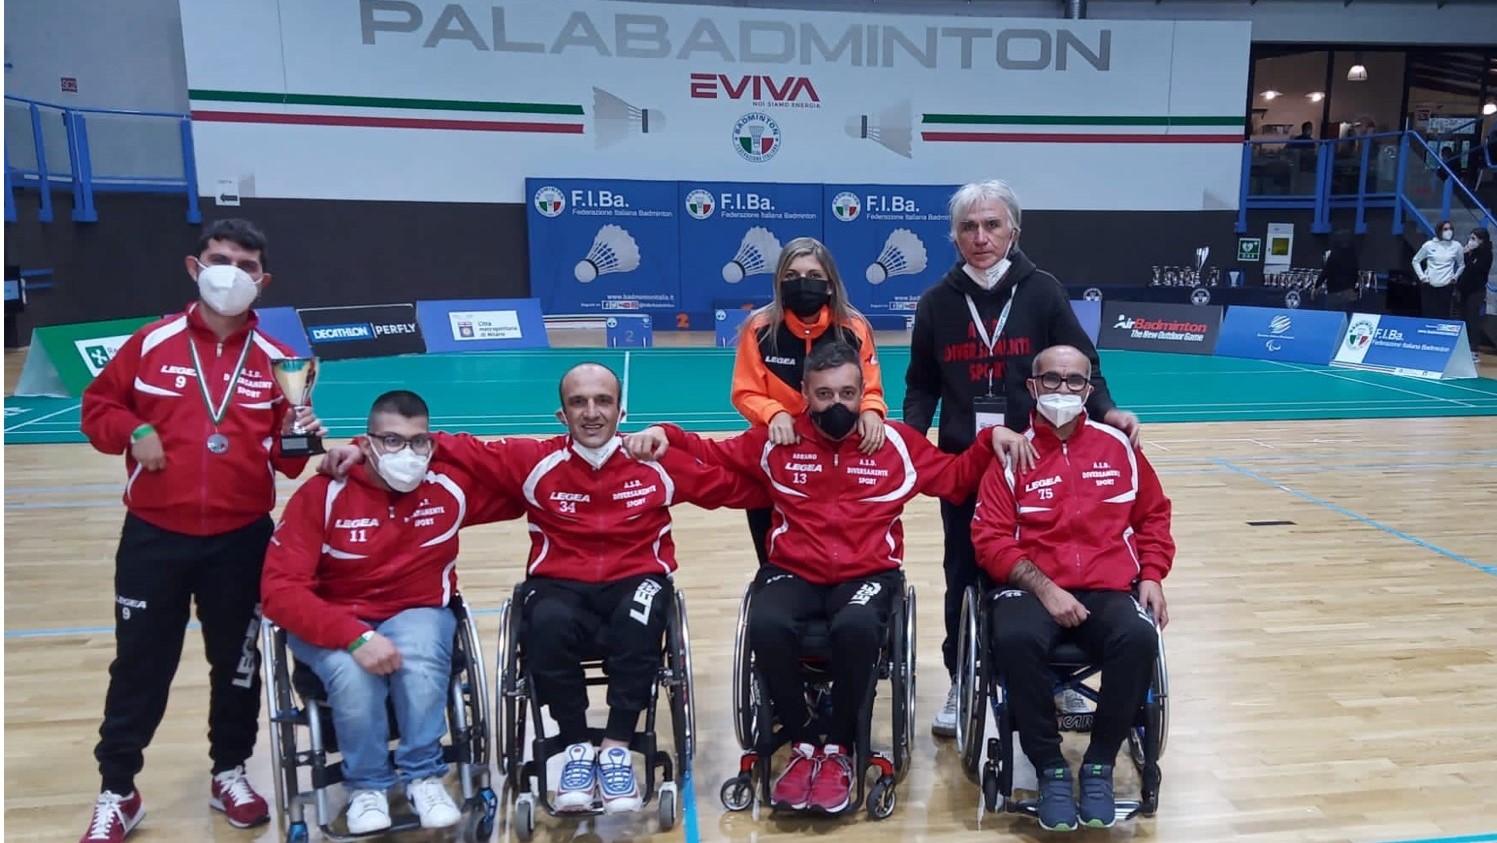 Tempio e Calangianus sul podio dei Campionati italiani Parabadminton 2021